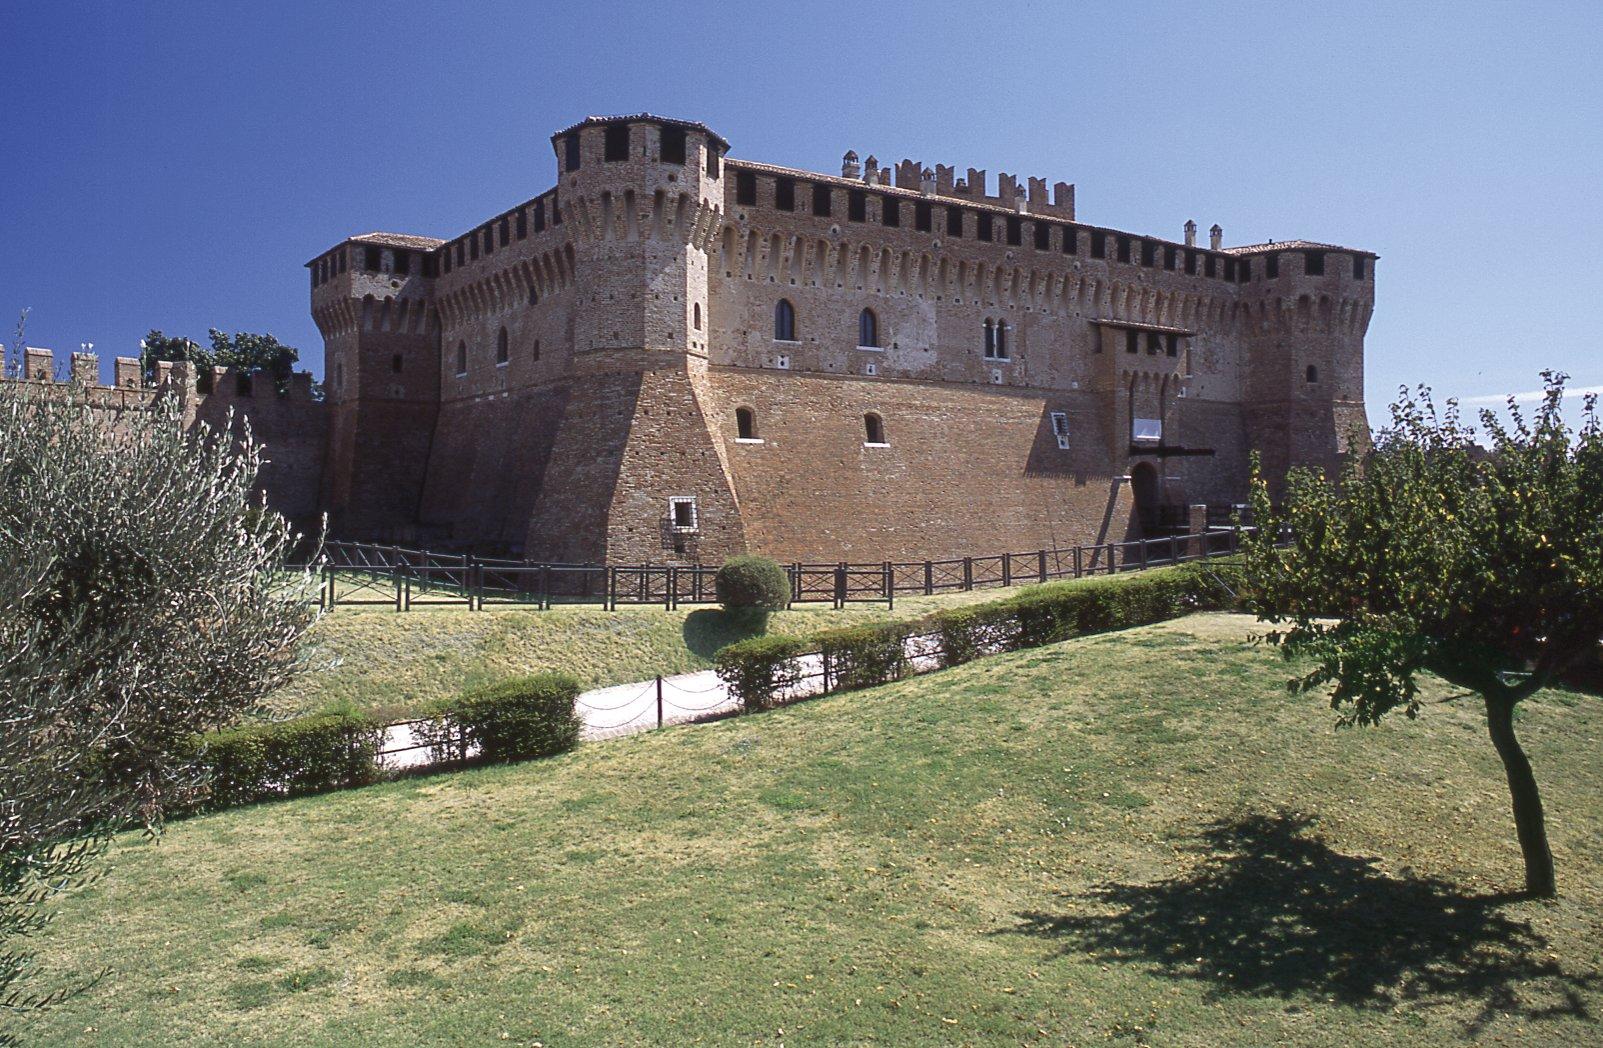 Blick auf die historische Burganlage von Gradara